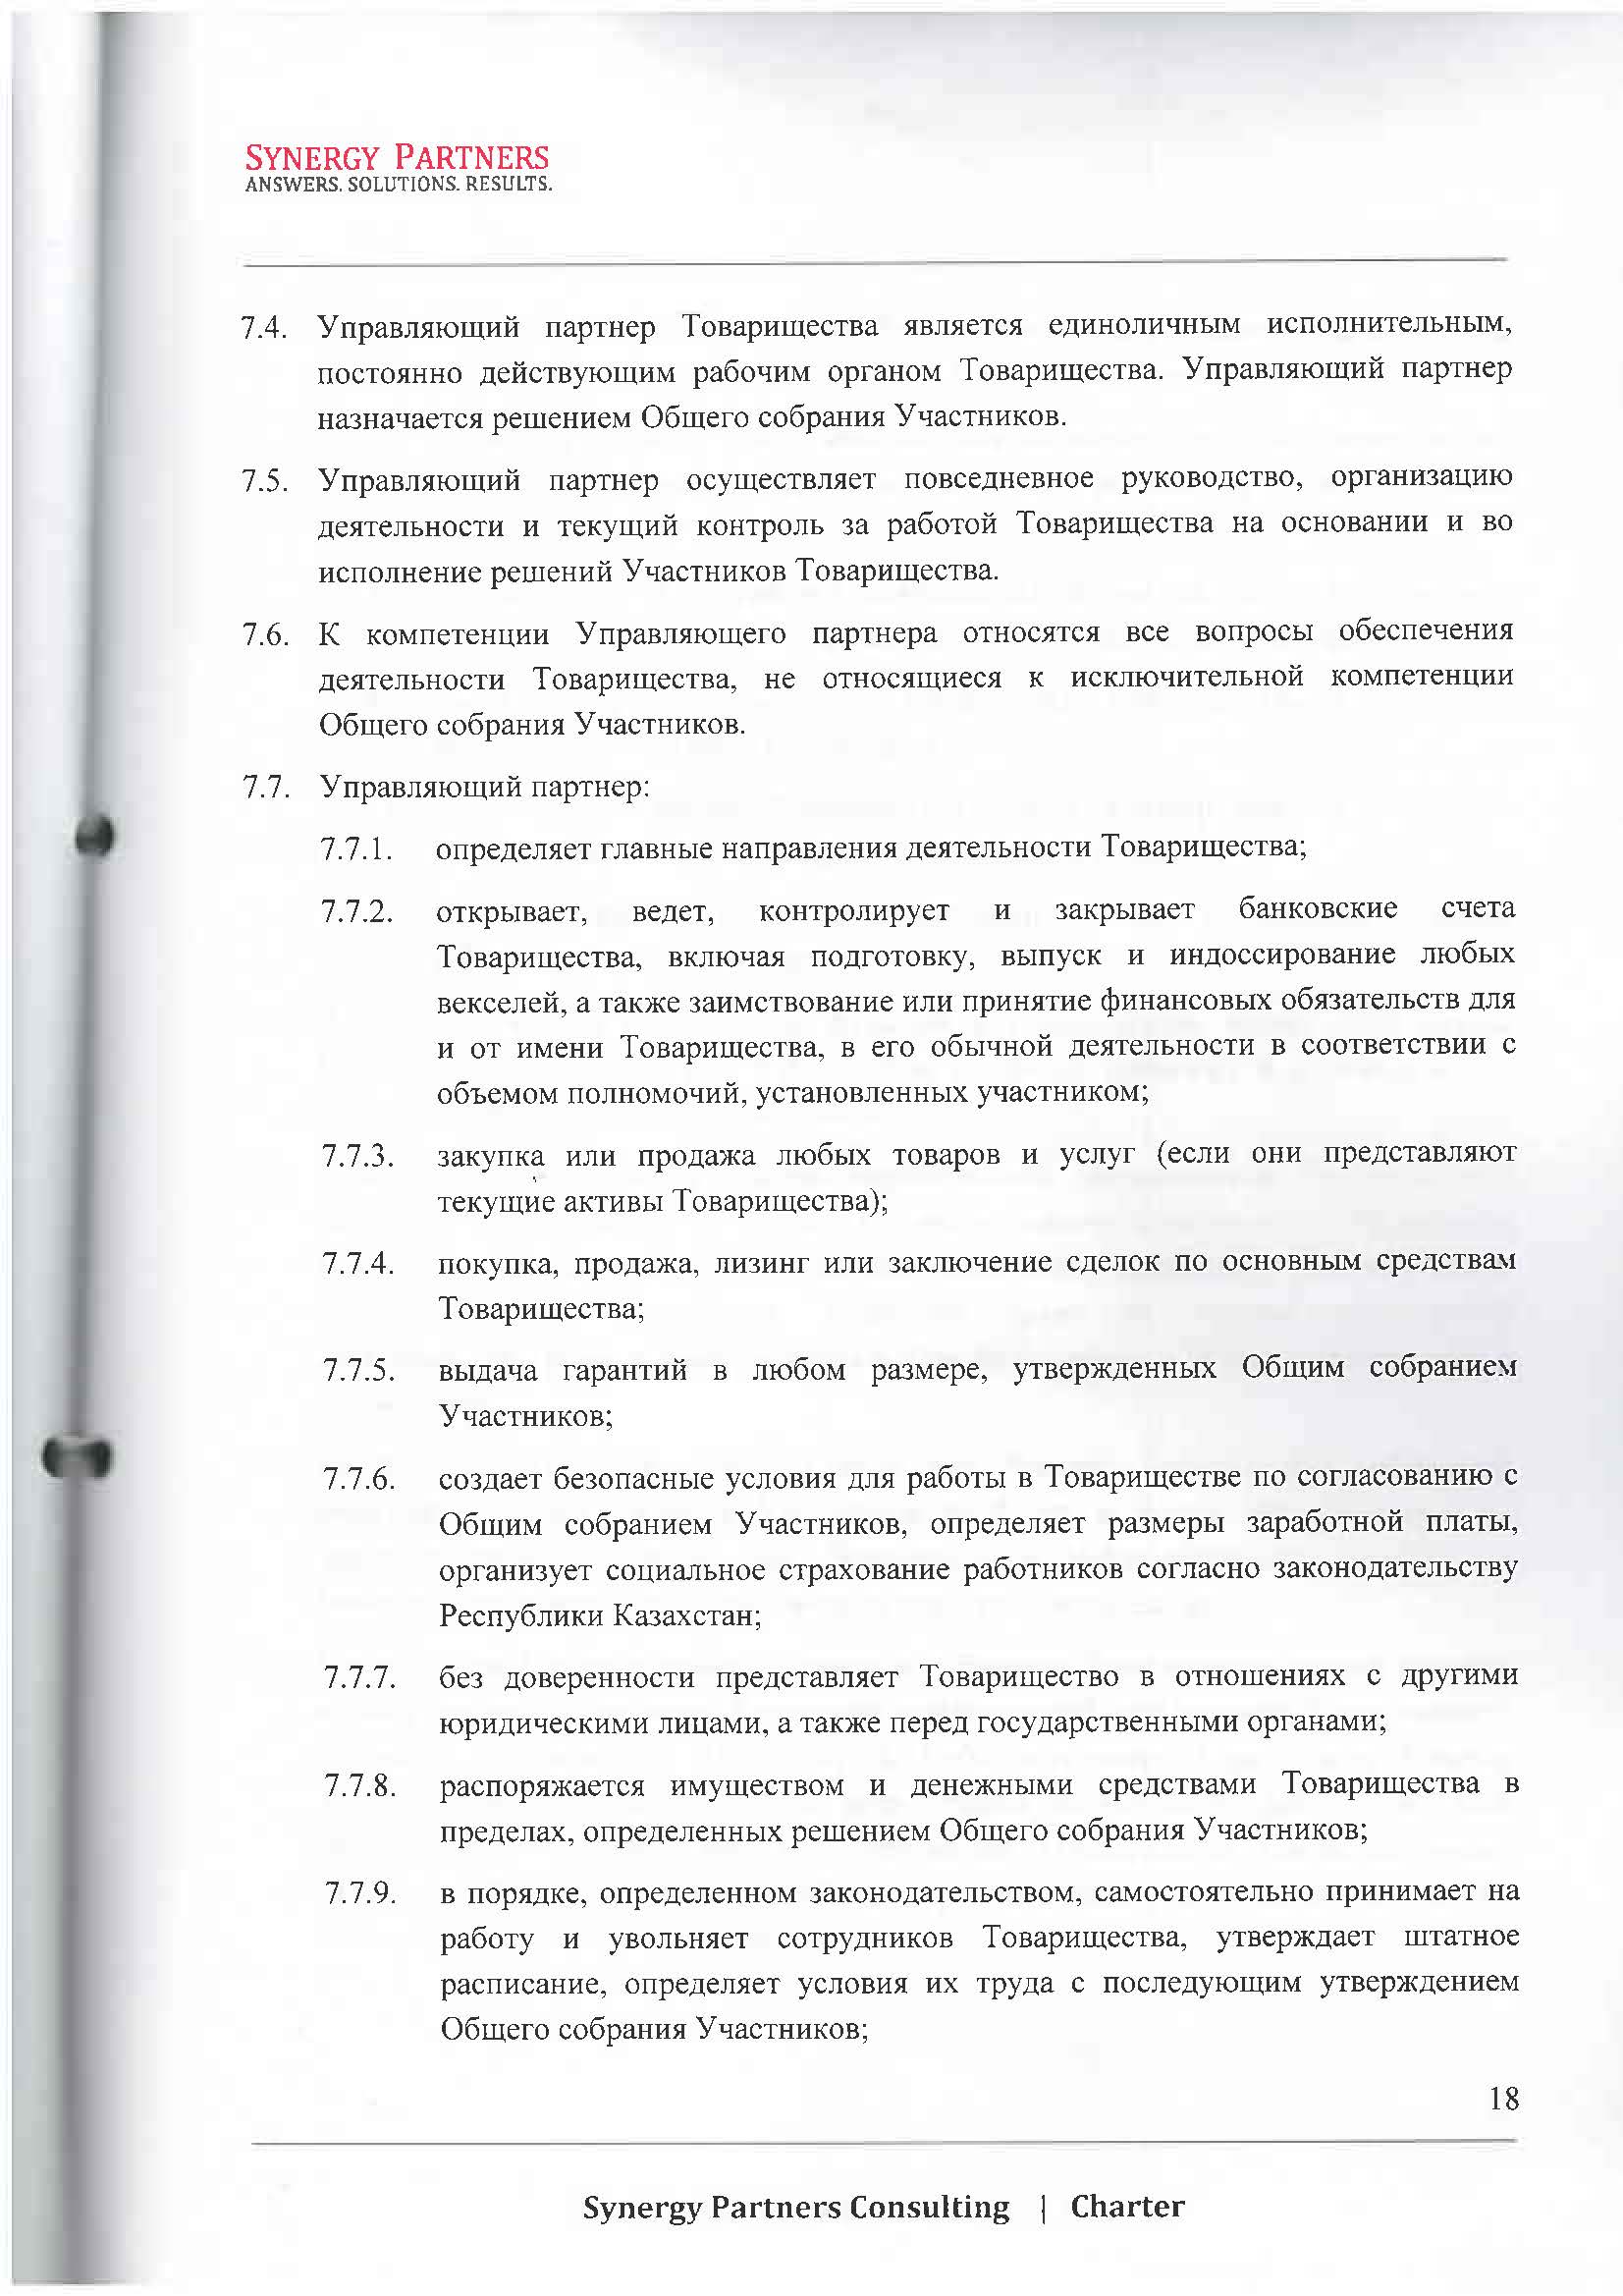 Наши реквизиты, сведения о нас - 16 | documentter.kz в Казахстане